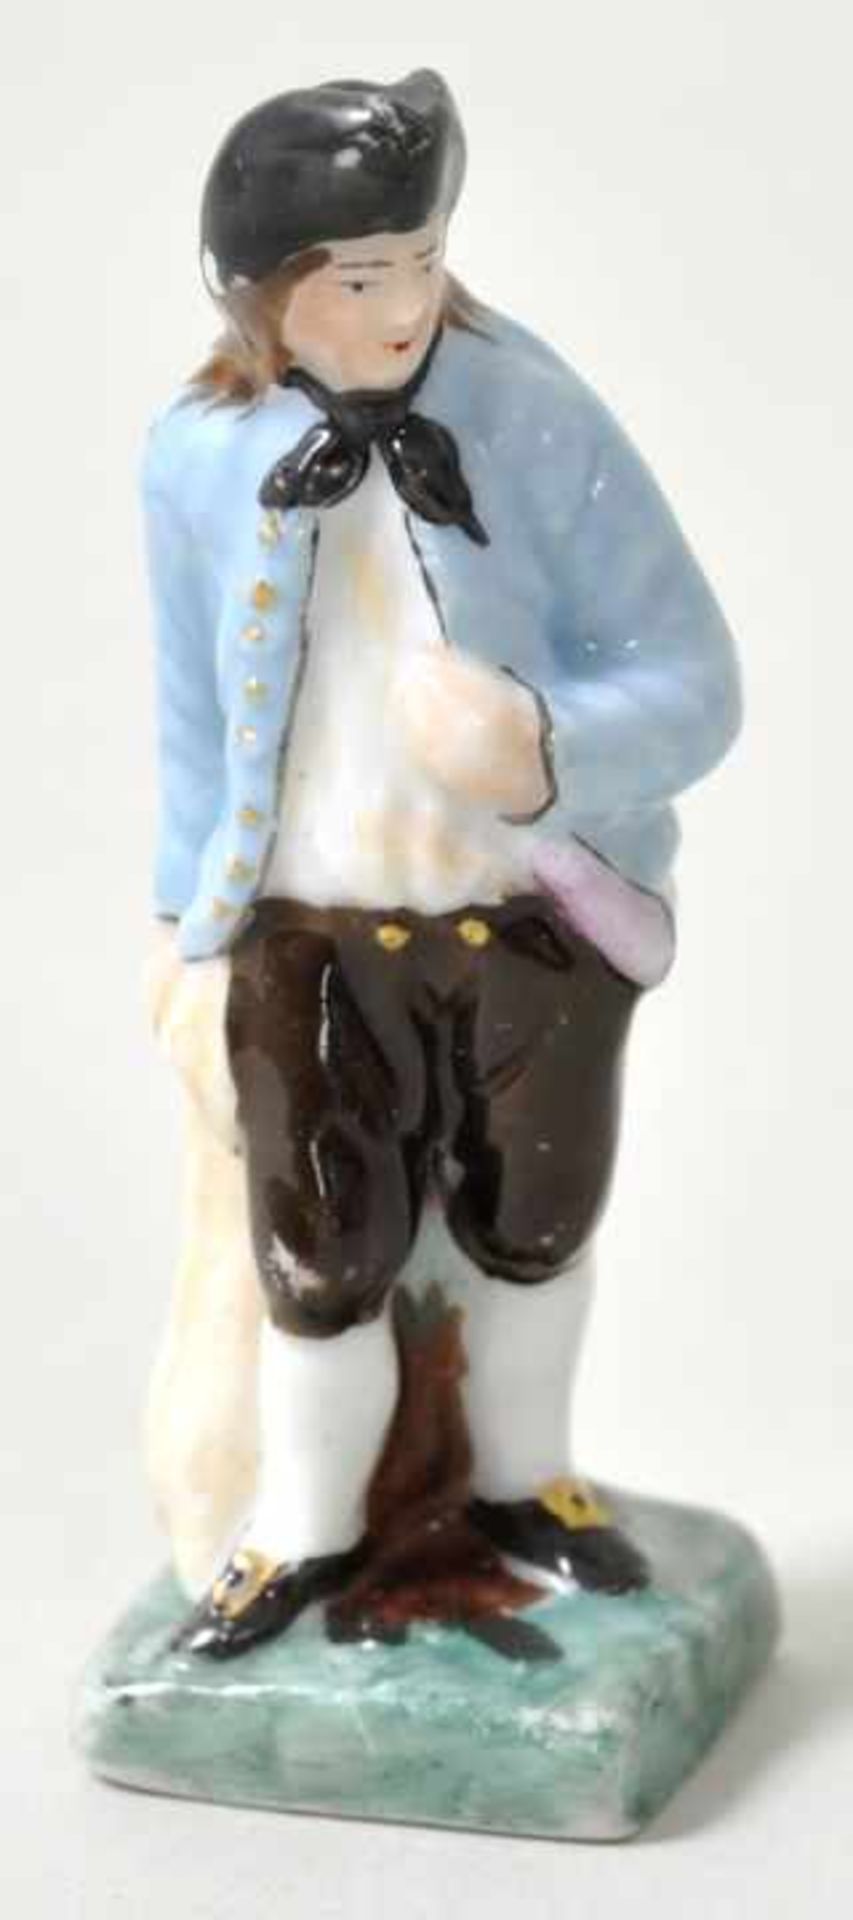 Miniaturfigur Bauer mit Sack, Ludwigsburg, 18. Jh. Porzellan, polychrom gefasst. Aus der Serie "